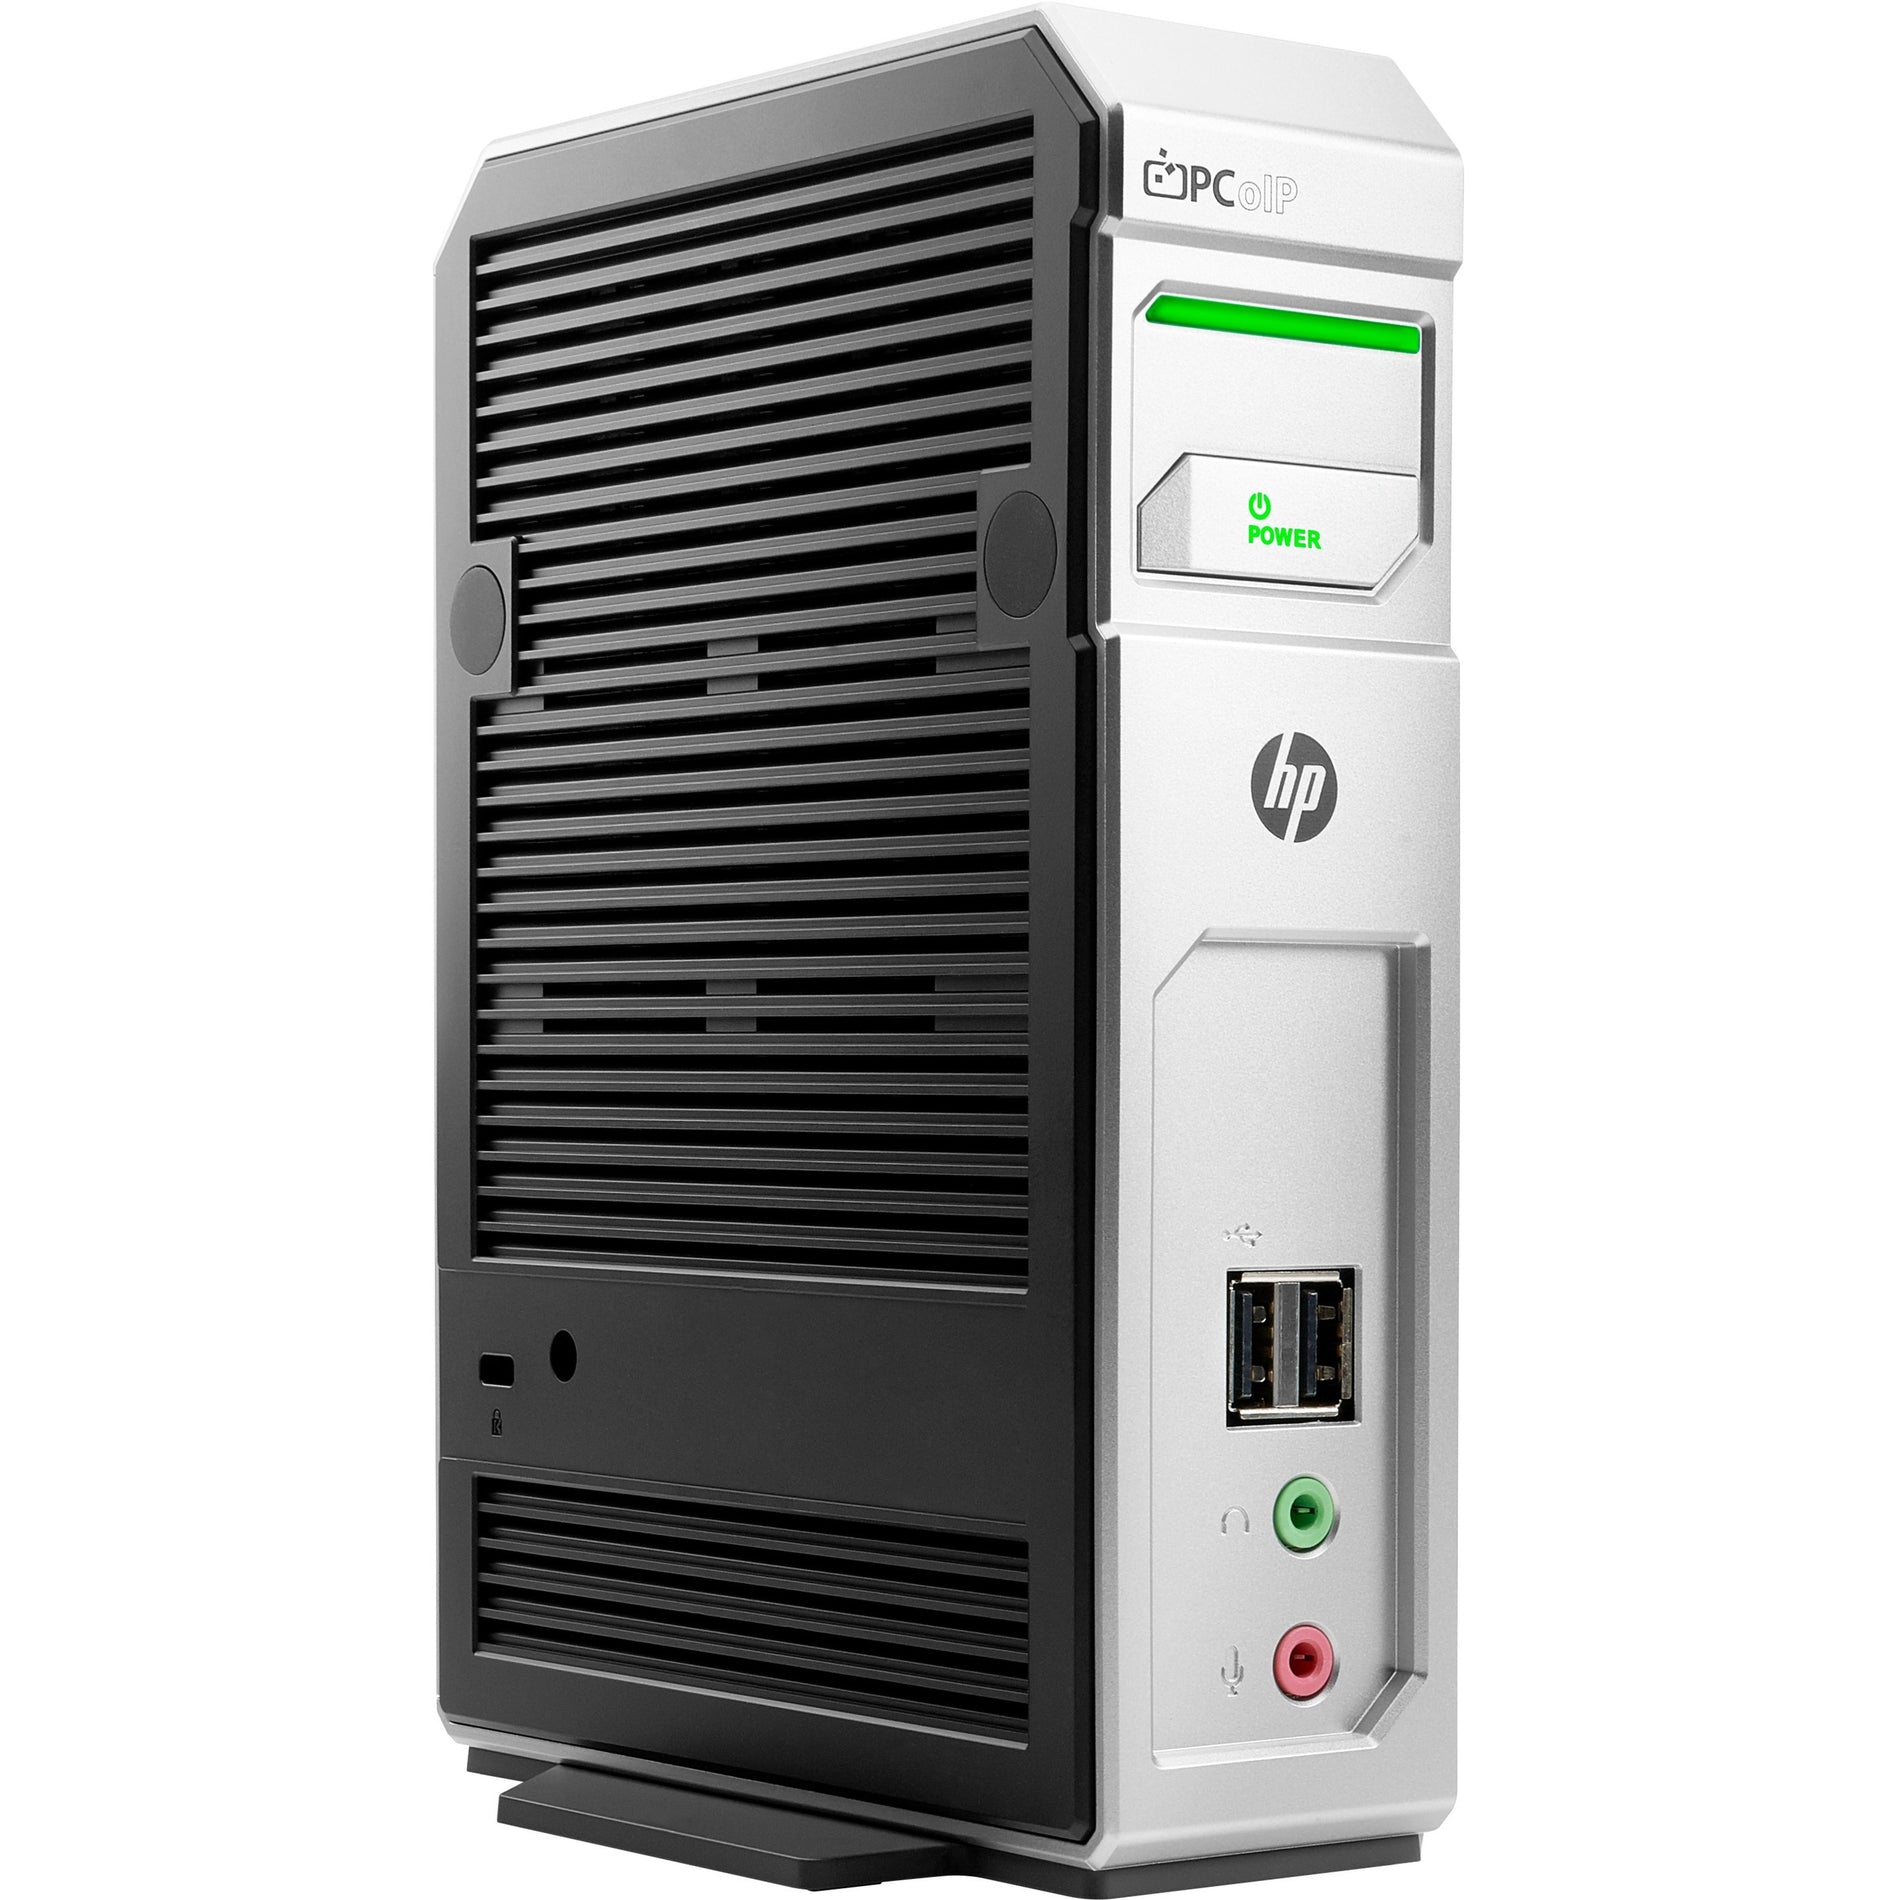 HP t310 Zero Client - Teradici Tera2140 (V0C65UA#ABA) [Discontinued]